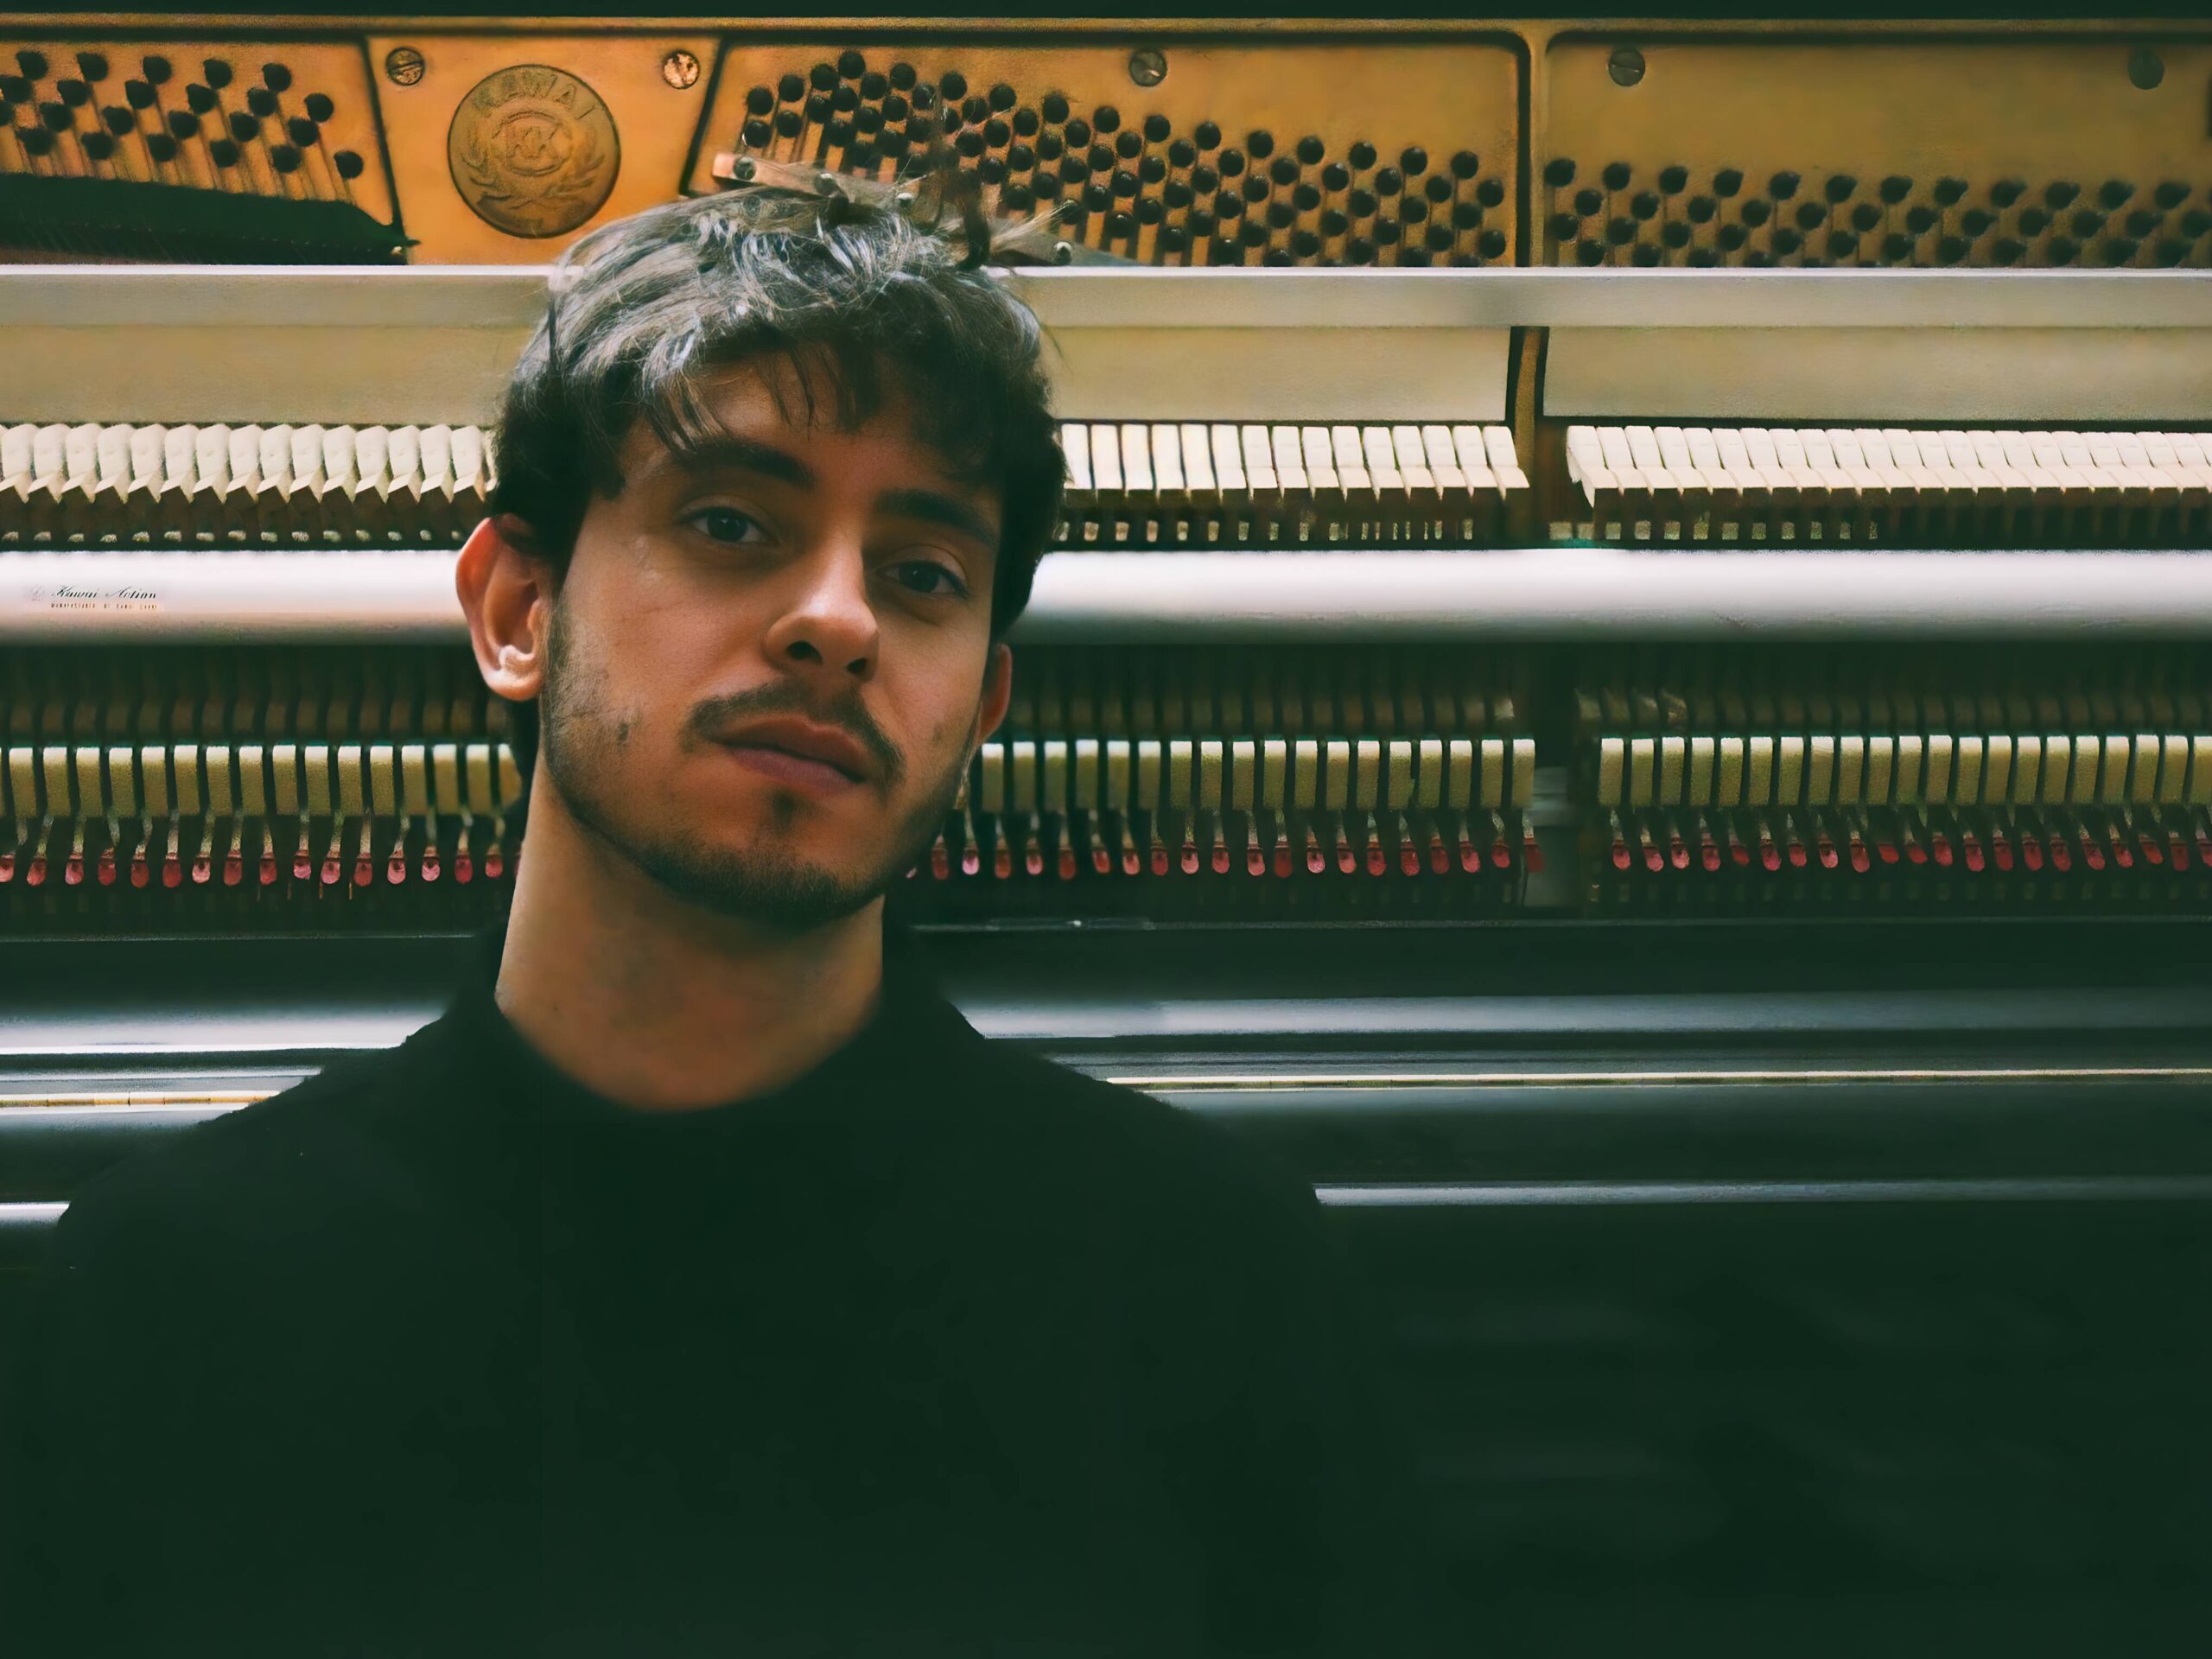 Intervista ad Edoardo Gastaldi: esplorando la musica e le emozioni